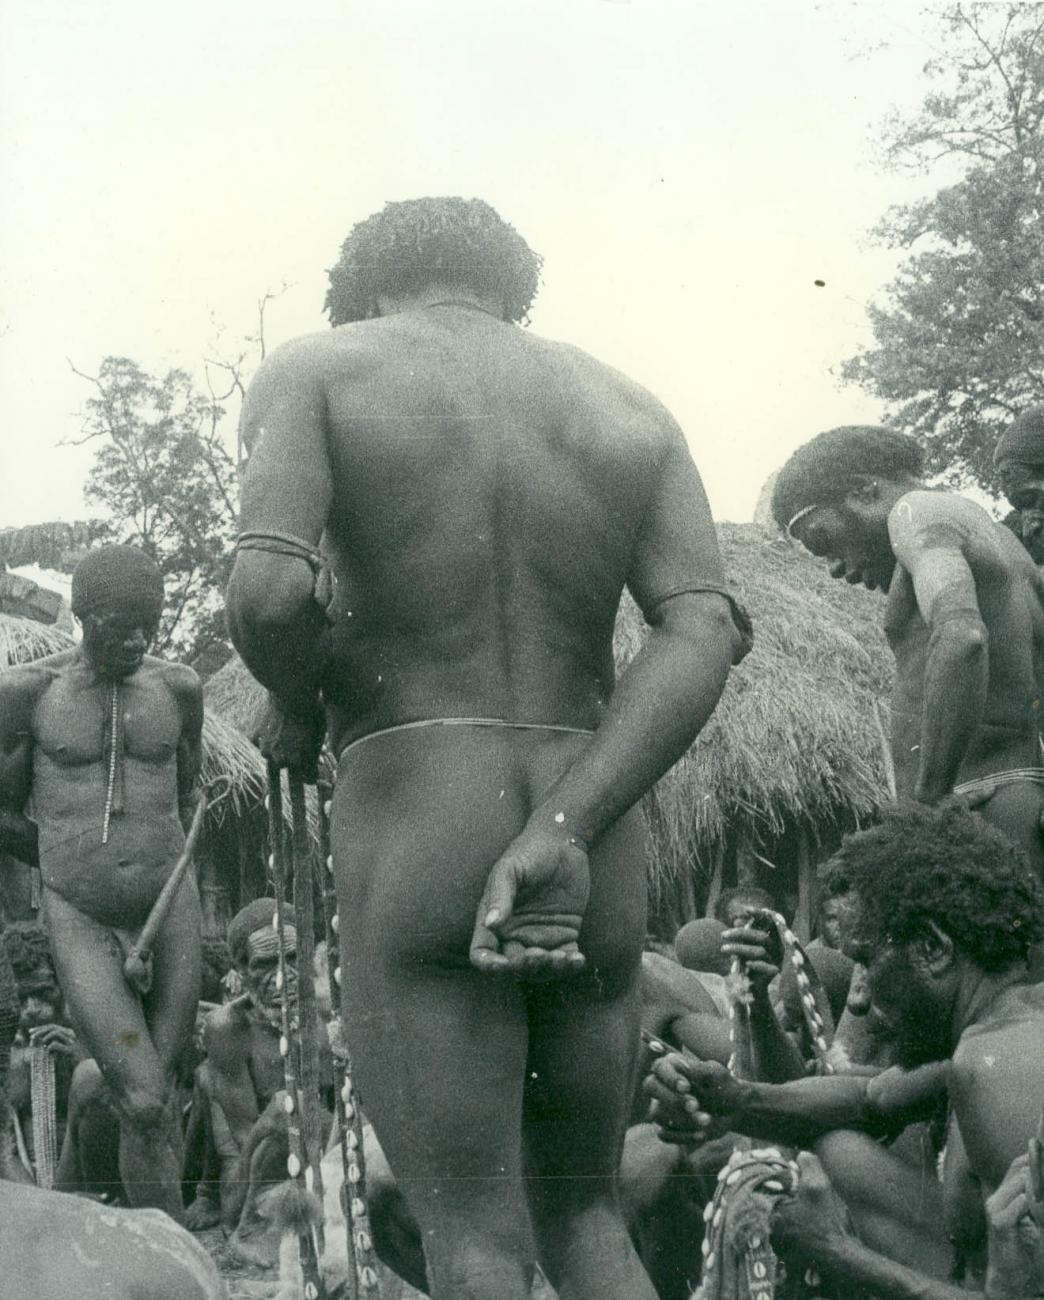 BD/40/68 - 
Berglandbewoners met peniskoker bij de inspectie van schelpenbanden
